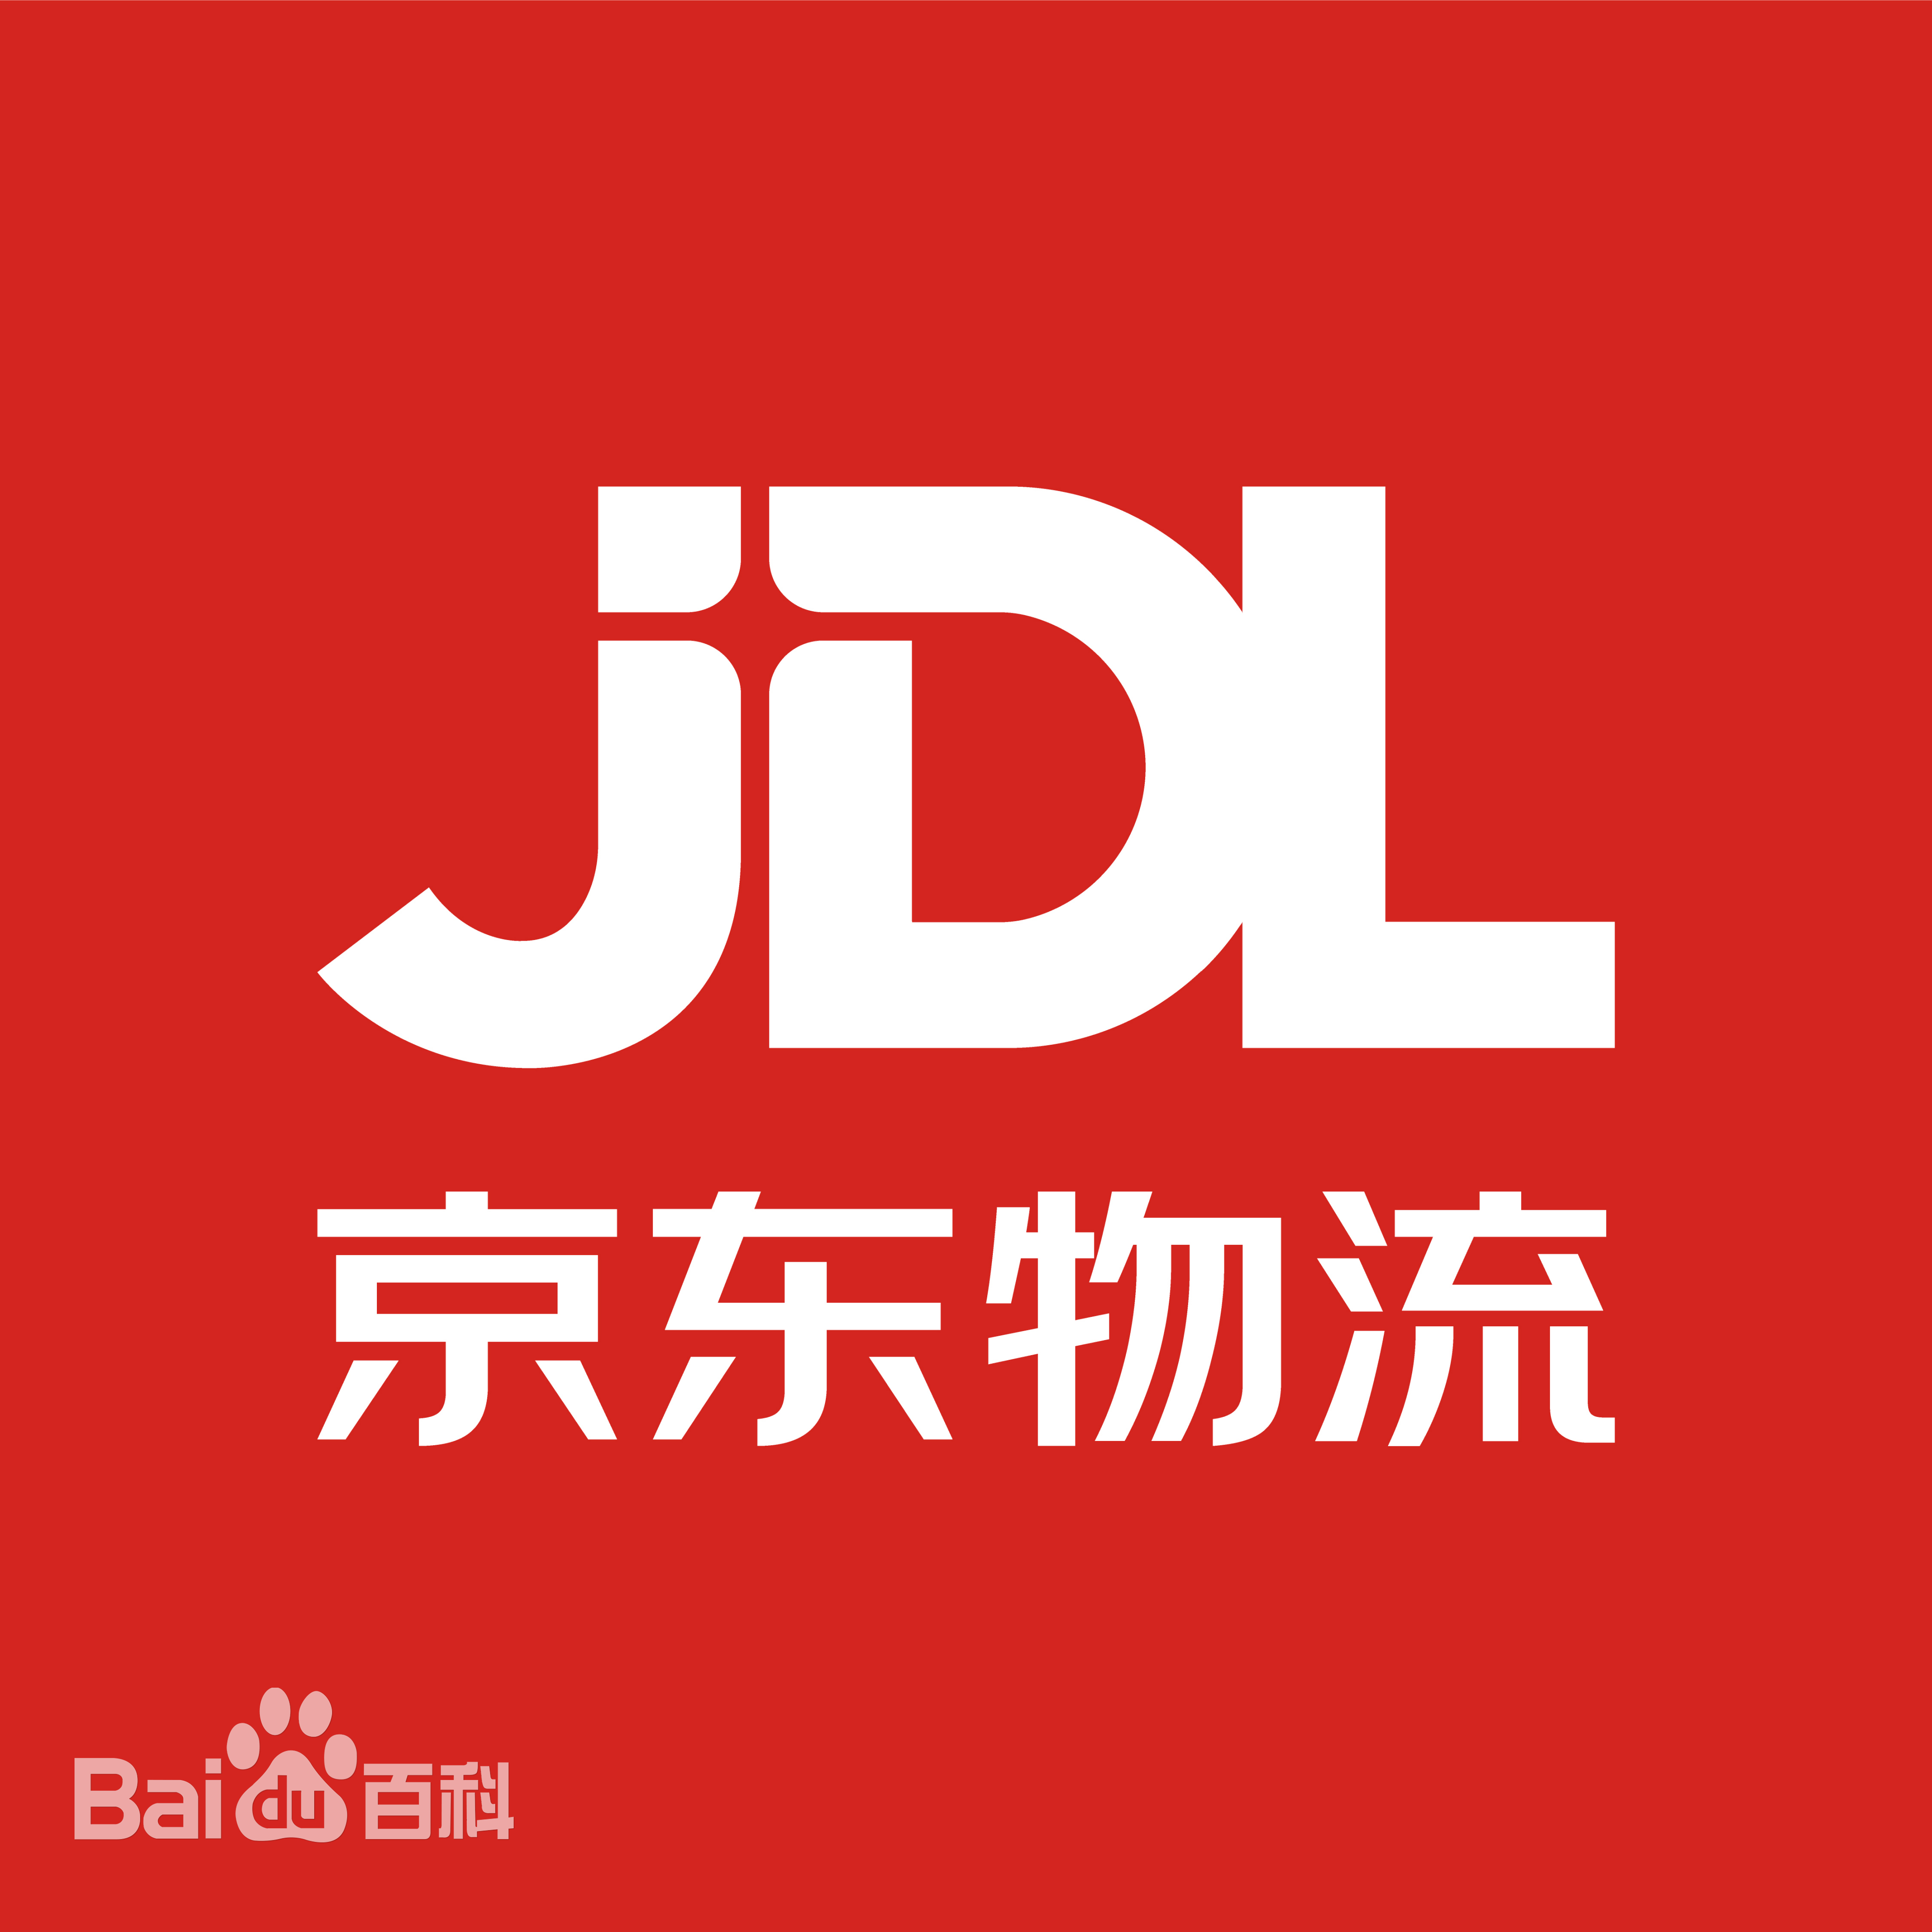 京东物流正式发布JDL京东物流科技品牌